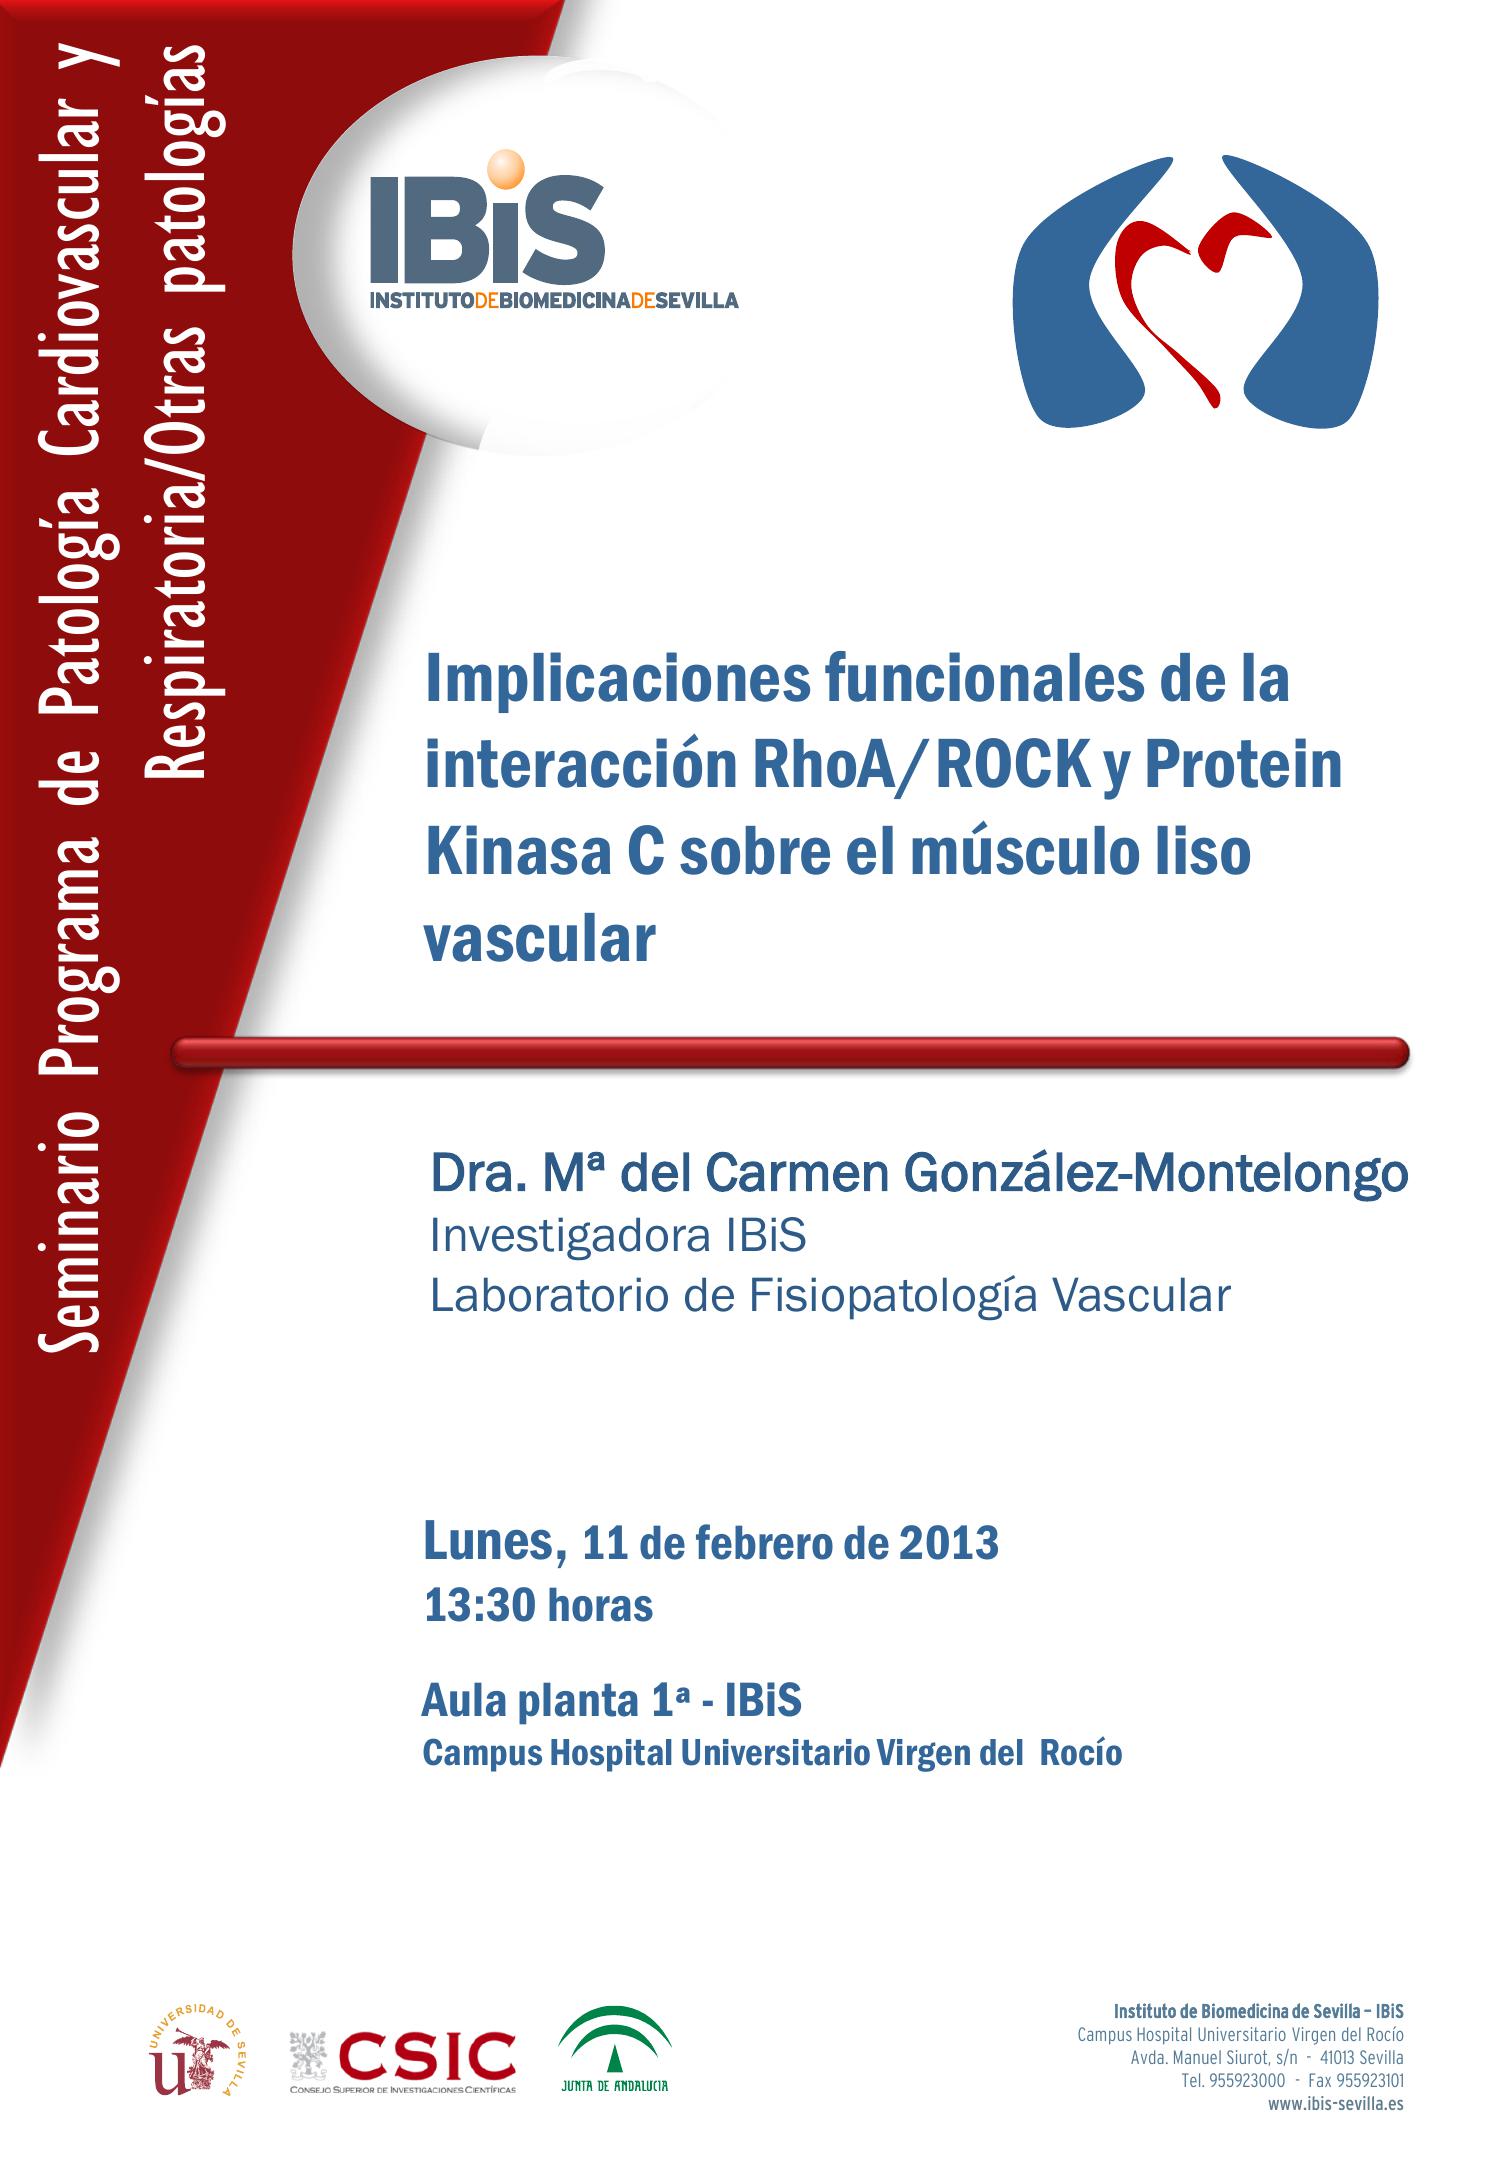 Poster: Implicaciones funcionales de la interacción RhoA/ROCK y Protein Kinasa C sobre el músculo liso vascular.